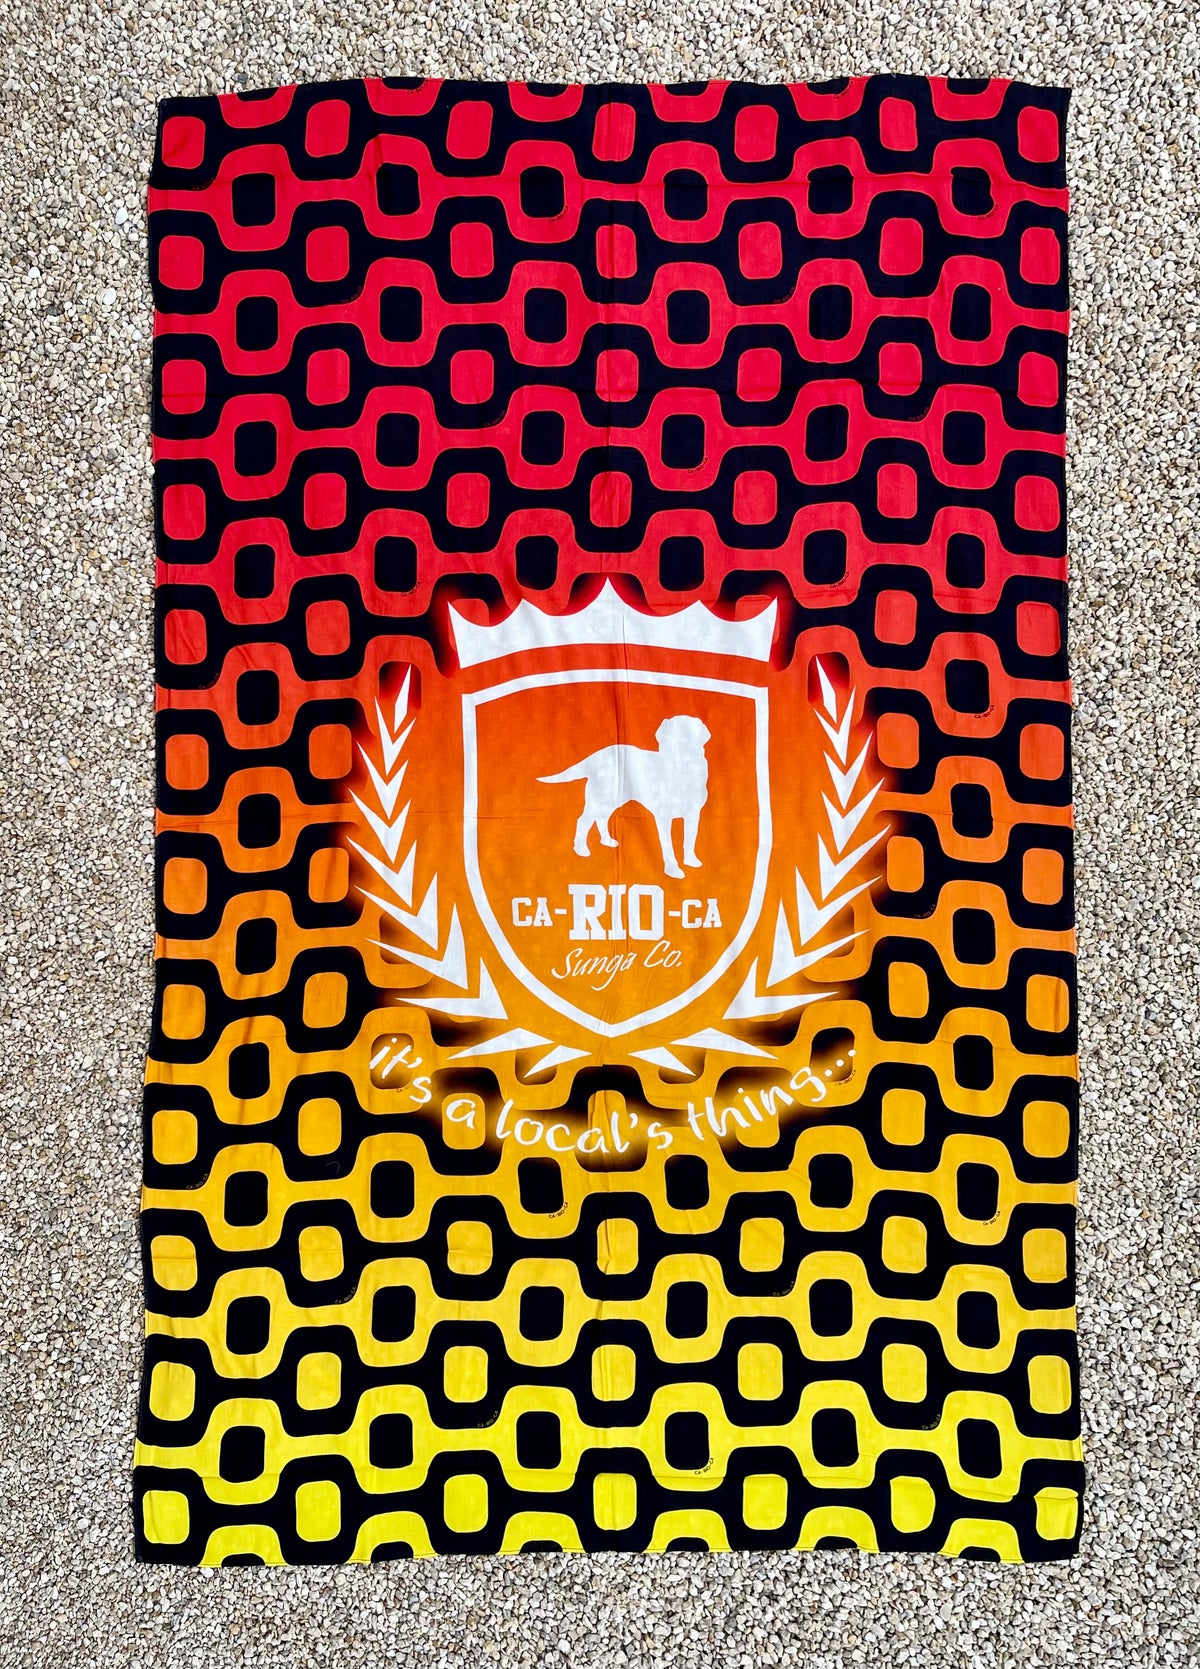 CA-RIO-CA Crest Logo Canga de Praia- Brazilian Beach Towel (Sarong / Pareo)